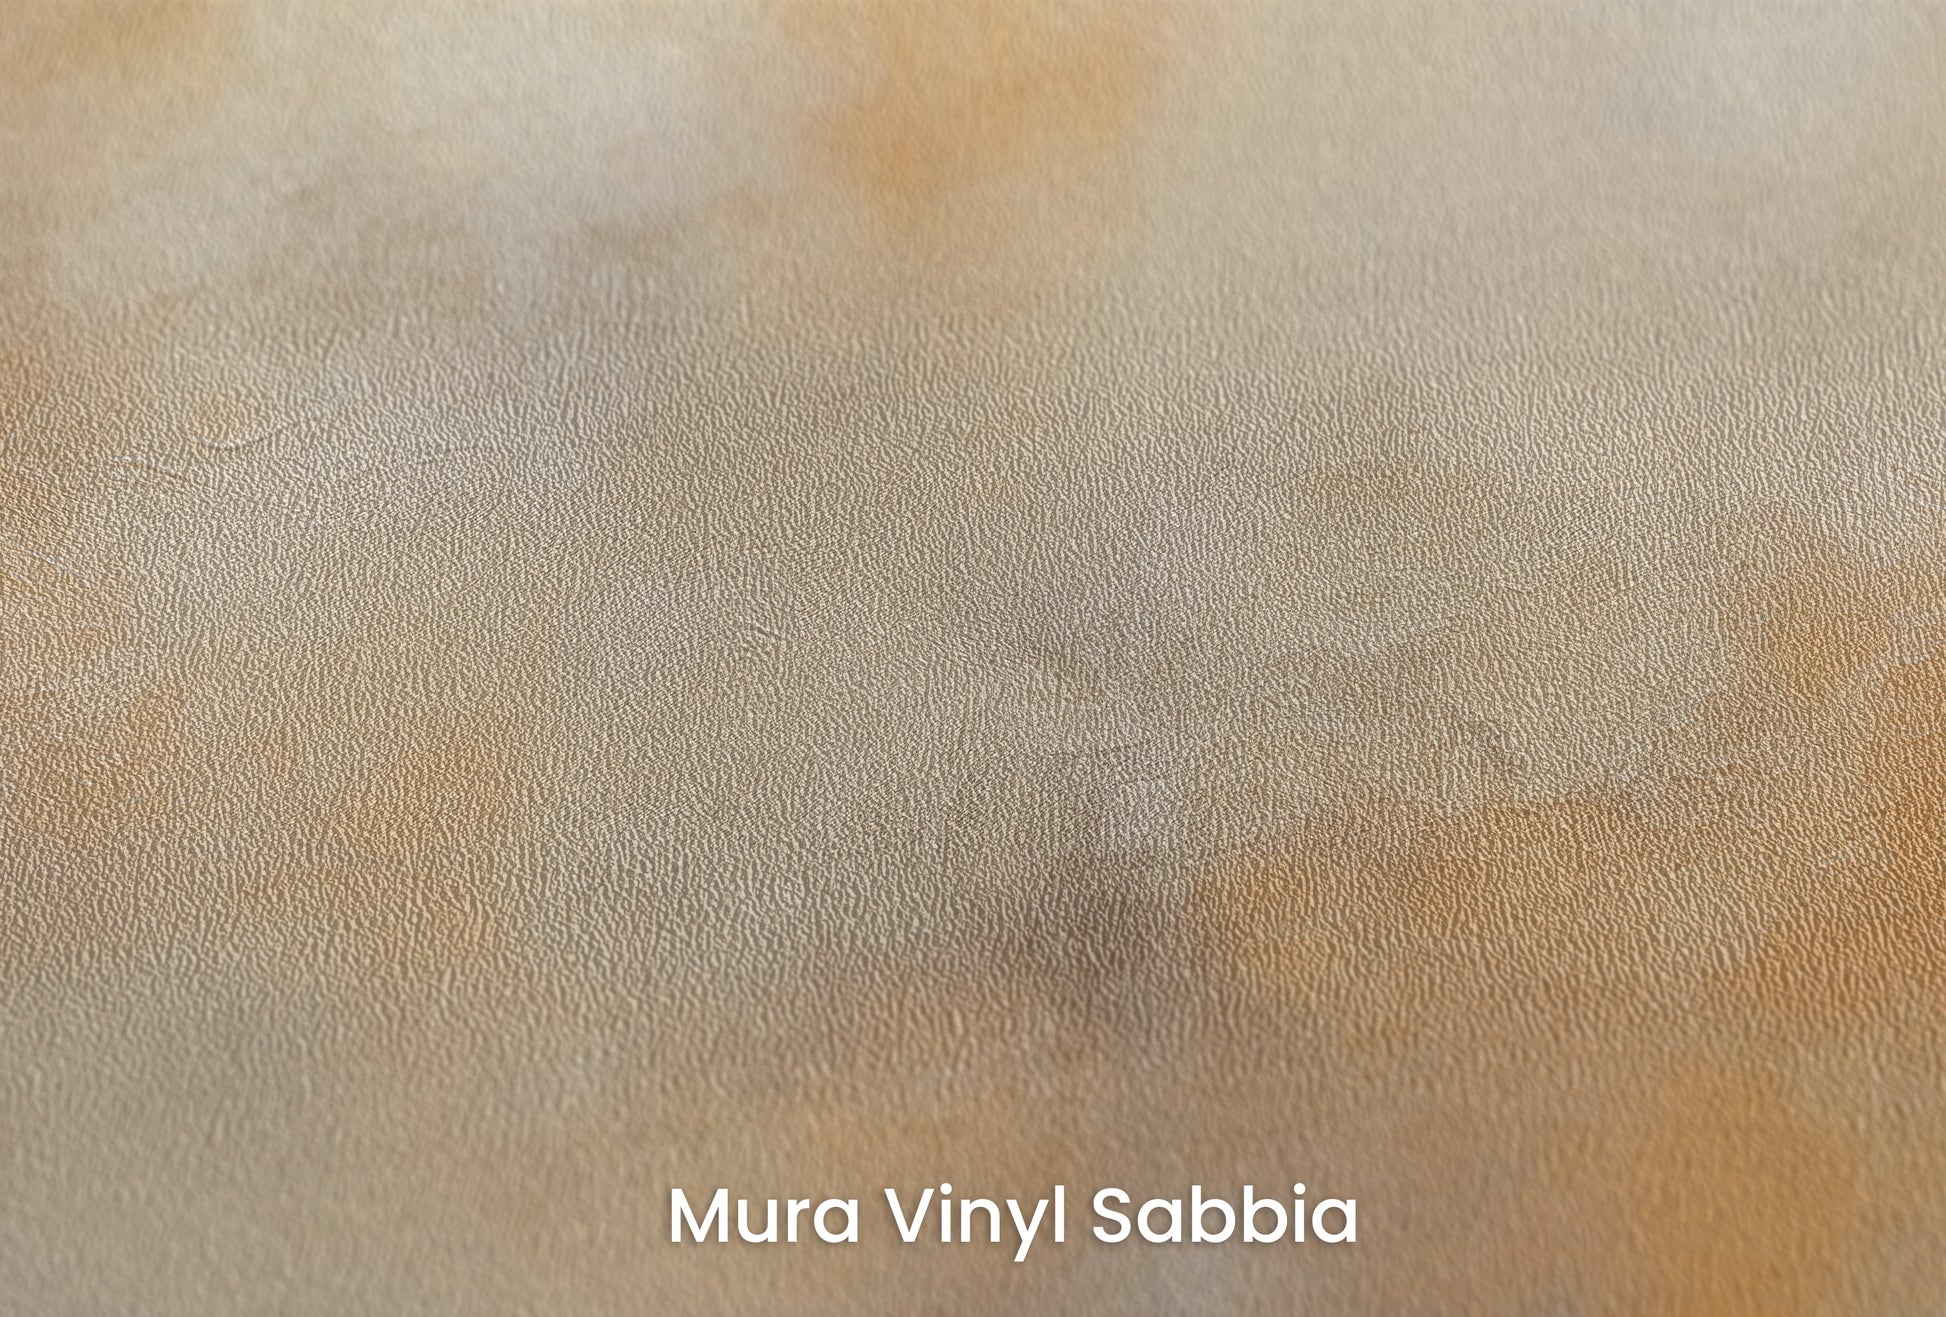 Zbliżenie na artystyczną fototapetę o nazwie WARMTH OF THE MORNING MIST na podłożu Mura Vinyl Sabbia struktura grubego ziarna piasku.